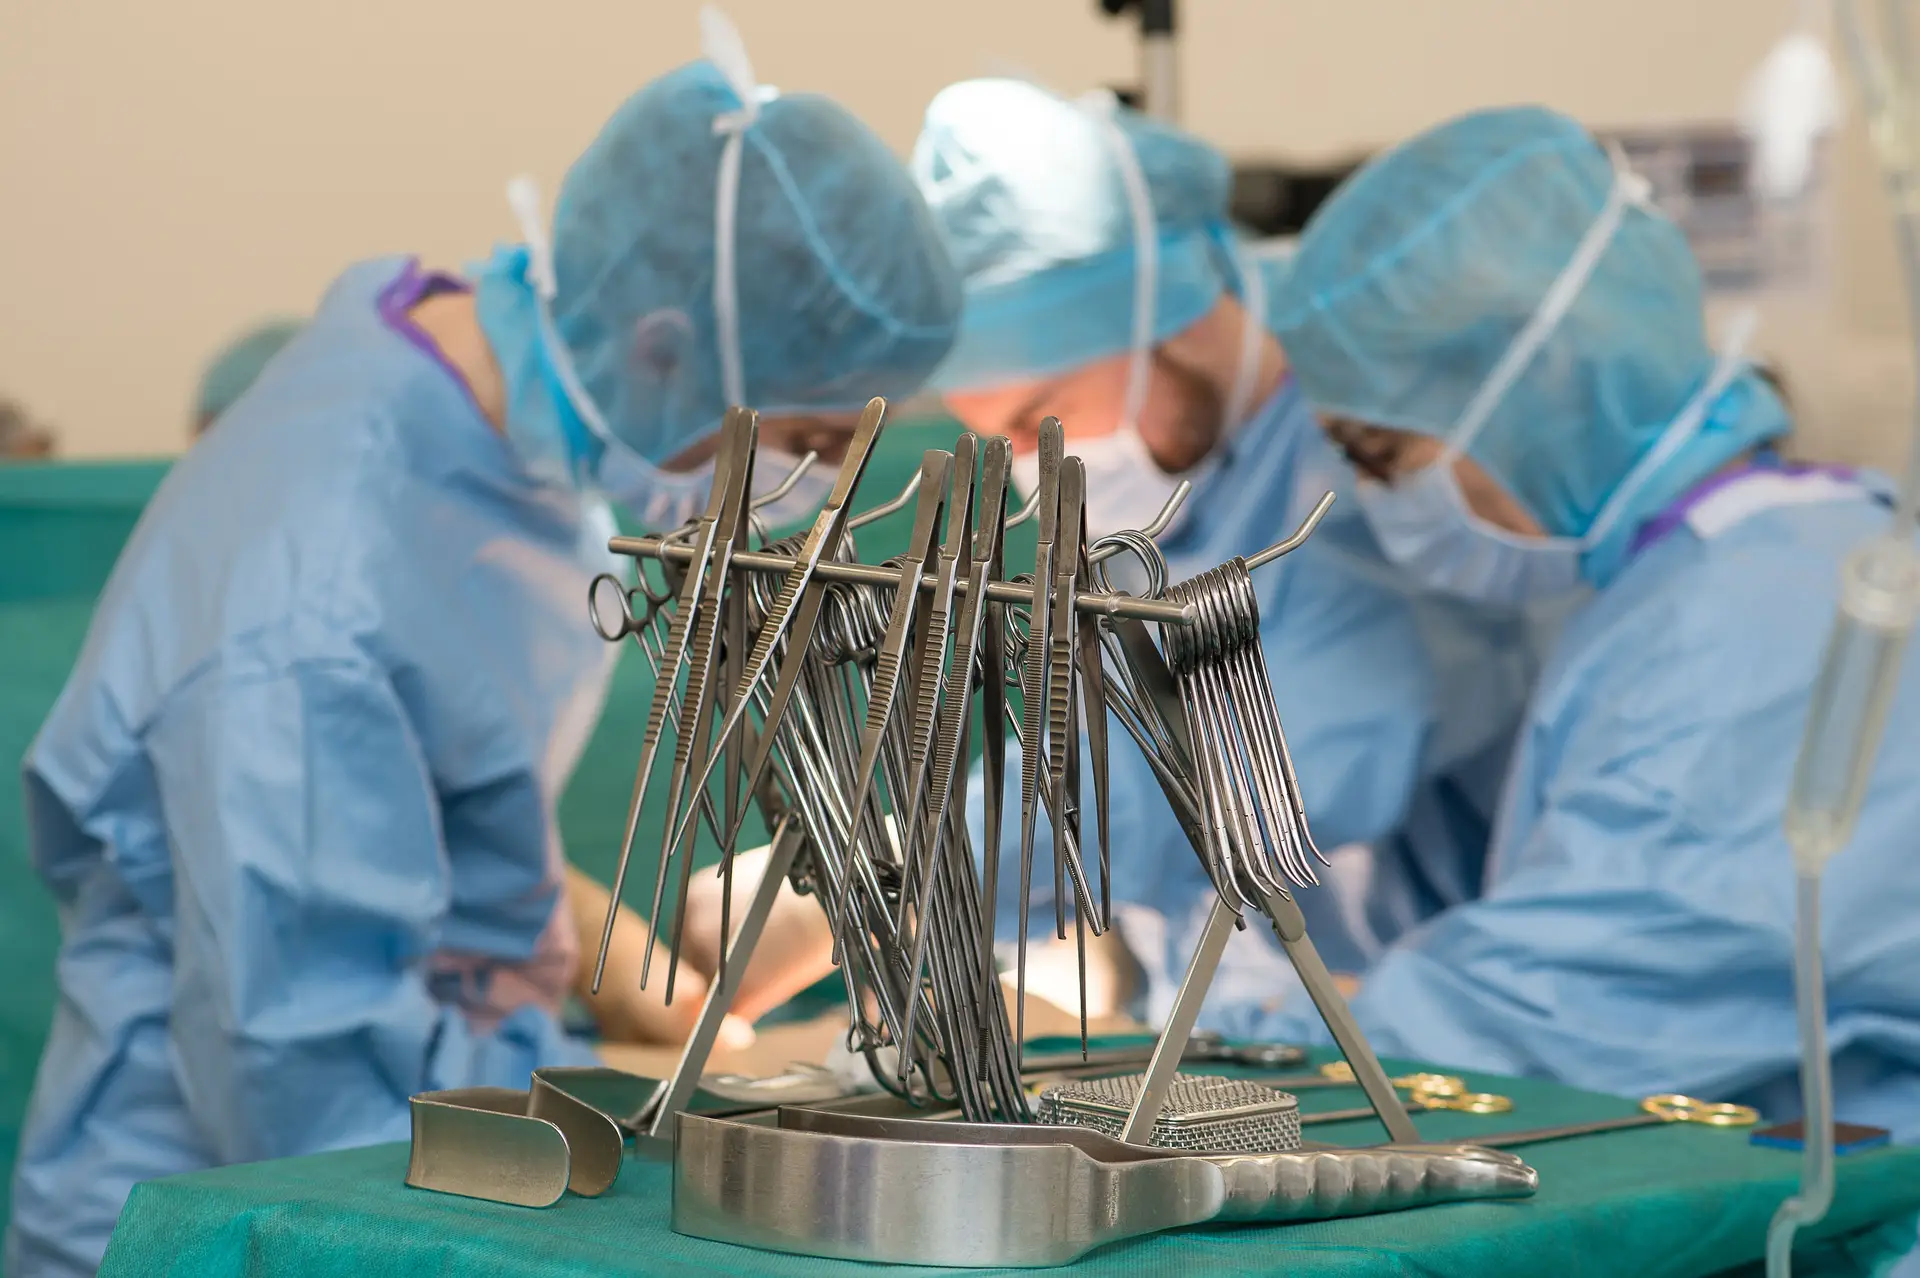 SNS realizou uma média de 55 mil cirurgias mensais este ano, um recorde desde 2013